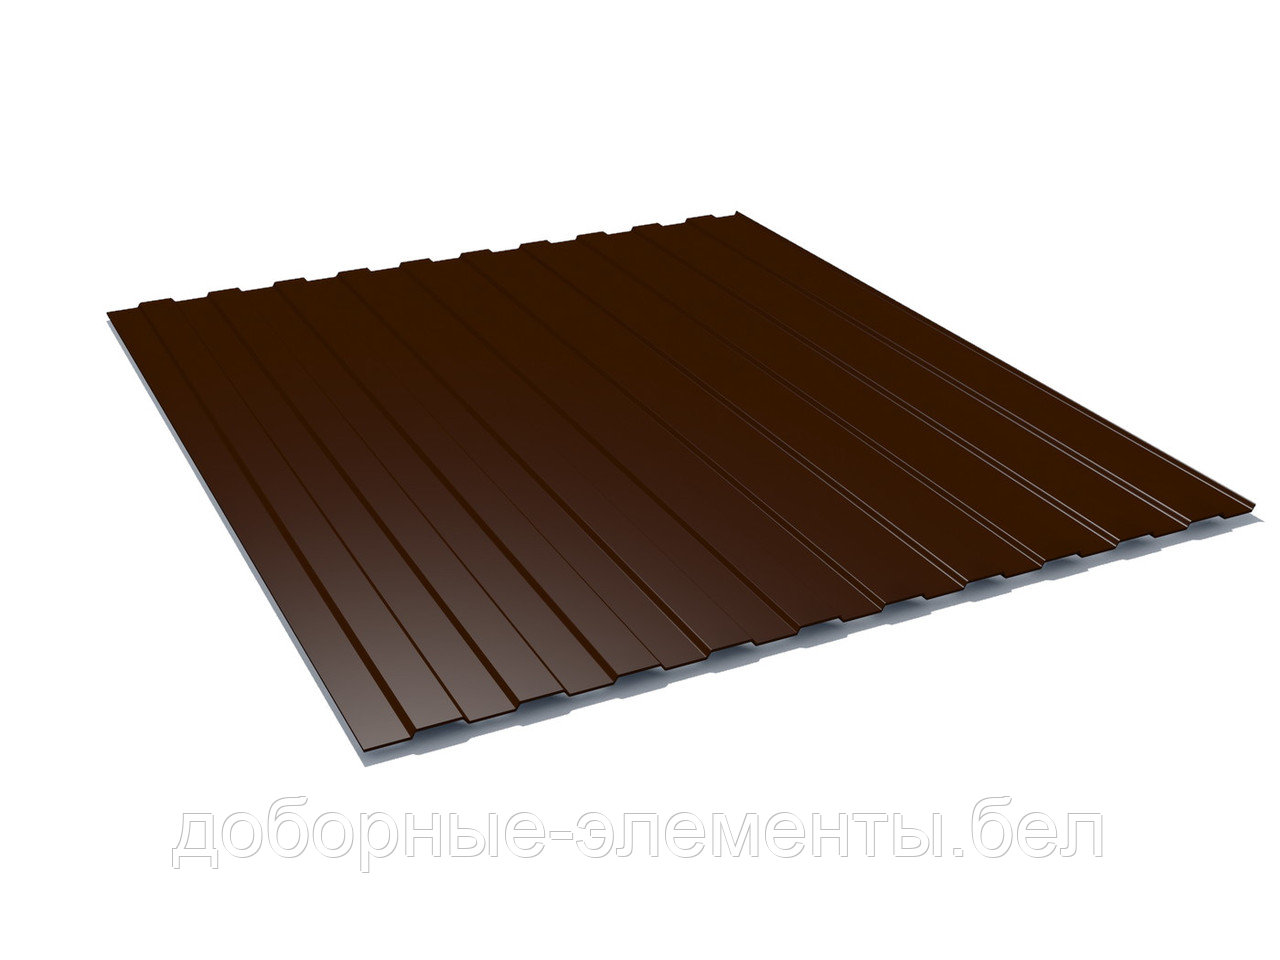 Профлист С8 для забора 1,25 м (шоколадно-коричневый), фото 1